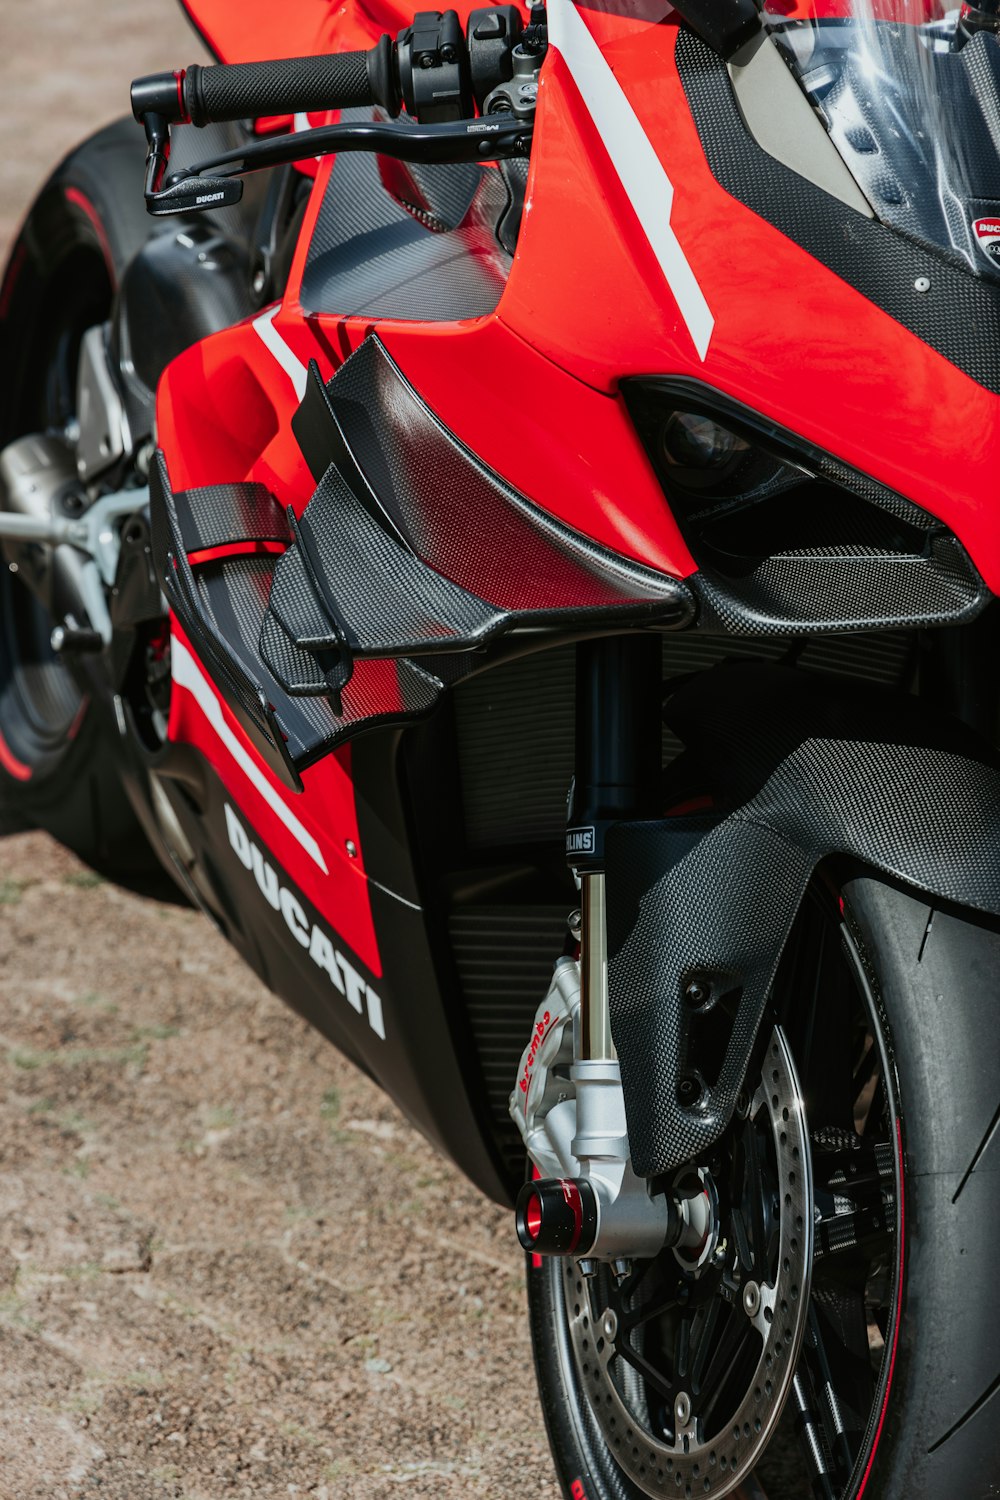 비포장 도로에 주차 된 빨간색과 검은 색 오토바이